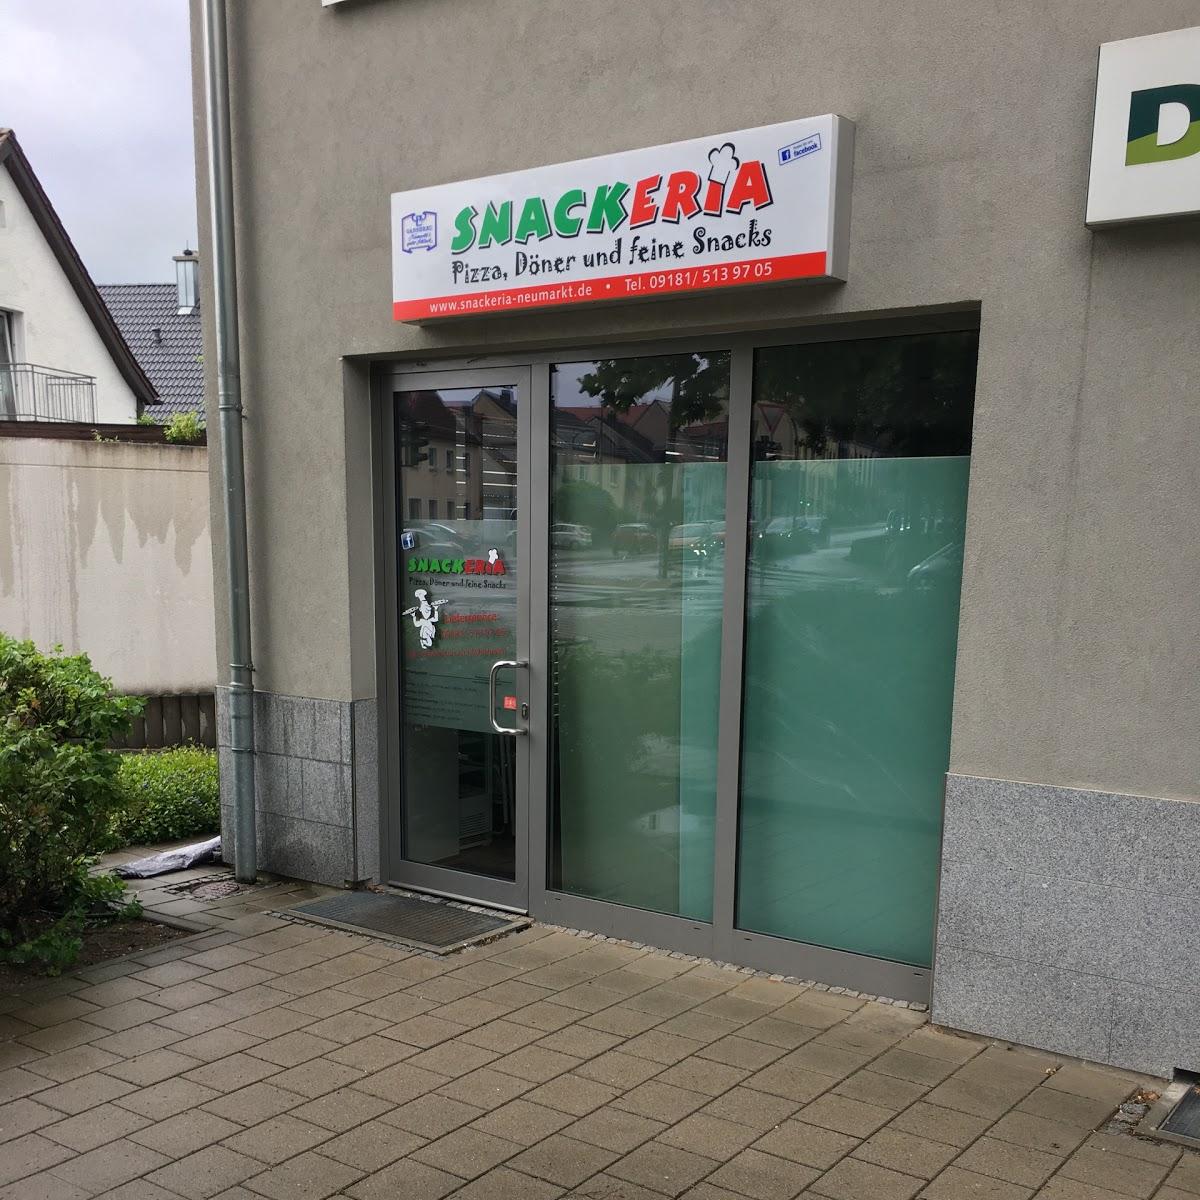 Restaurant "Snackeria NM" in Neumarkt in der Oberpfalz